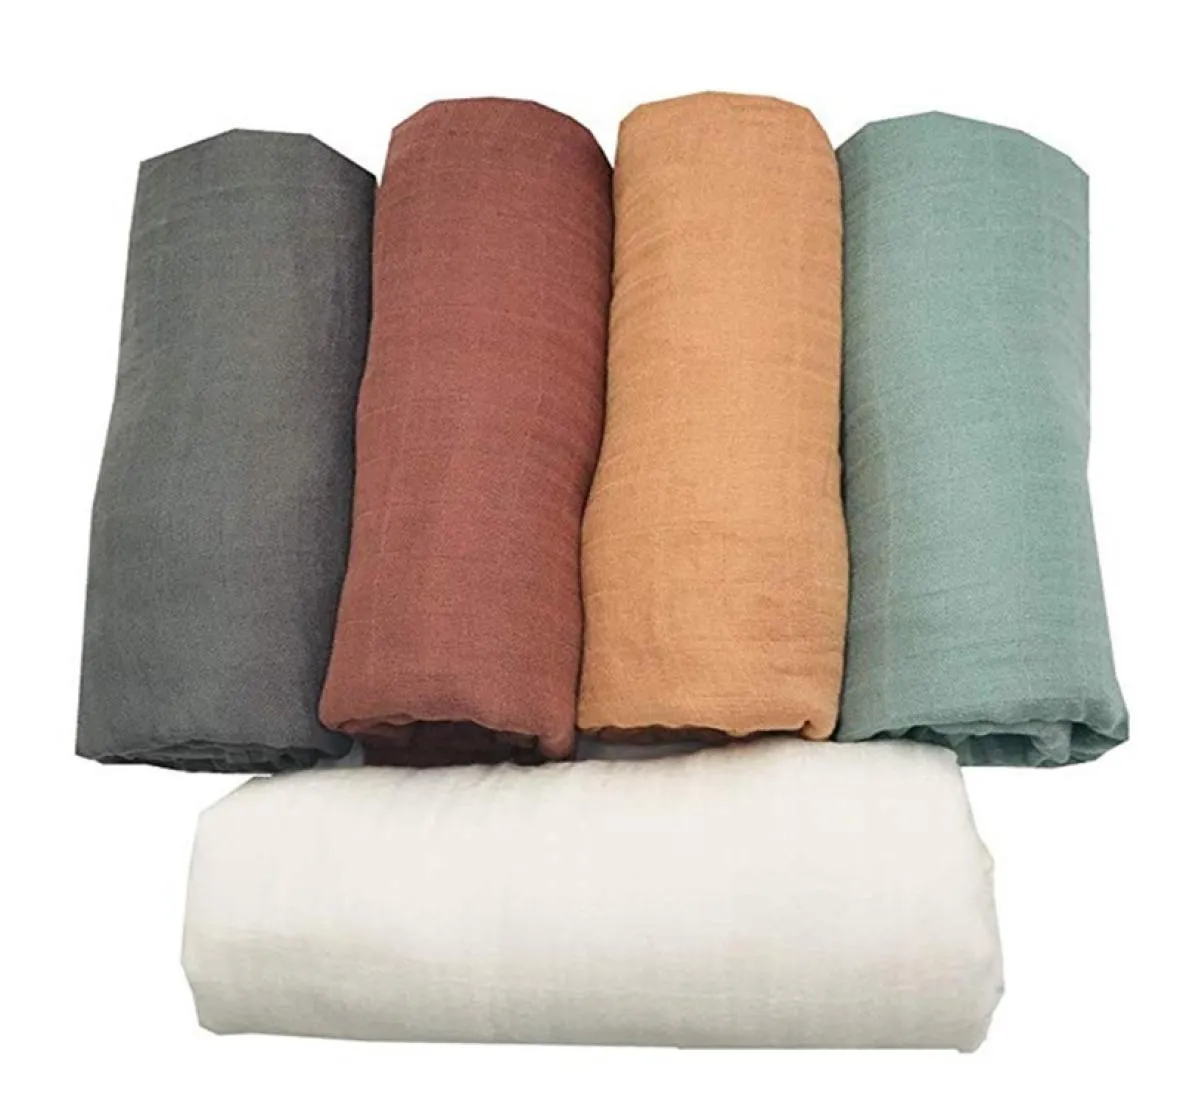 70 couches en coton de bambou swaddle couvertures en mousseline de qualité meilleure que le coton bébé couverture multi-usage écharpe pour bébé Y201009 2012 Y26824458